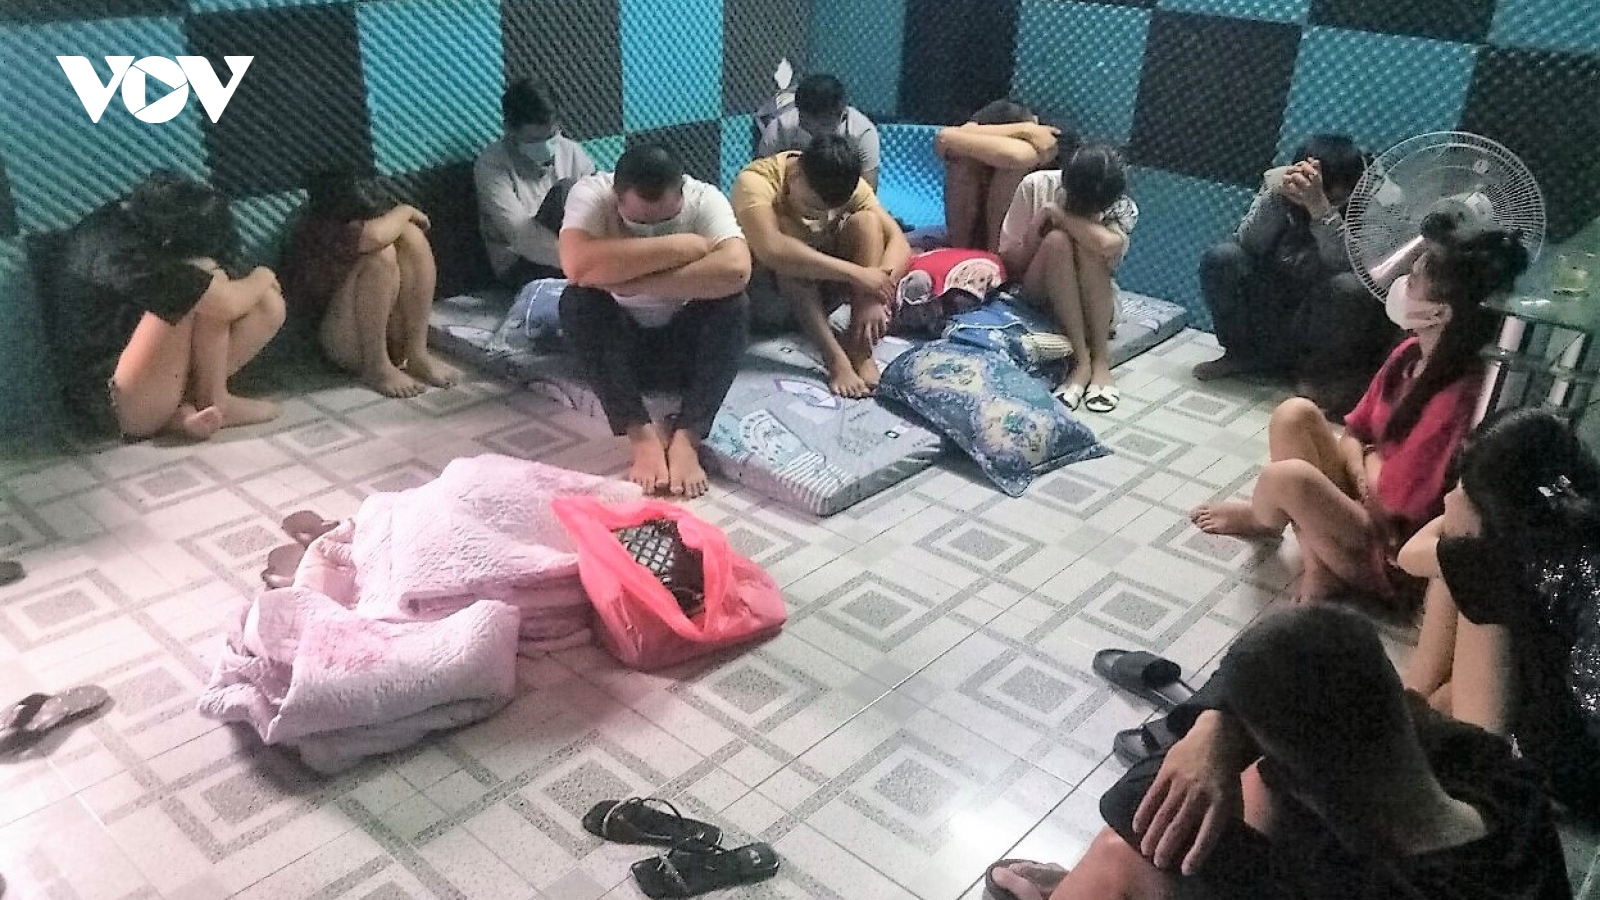 35 nam nữ tụ tập tại nhà nghỉ, sử dụng ma túy đá bất chấp lệnh giãn cách